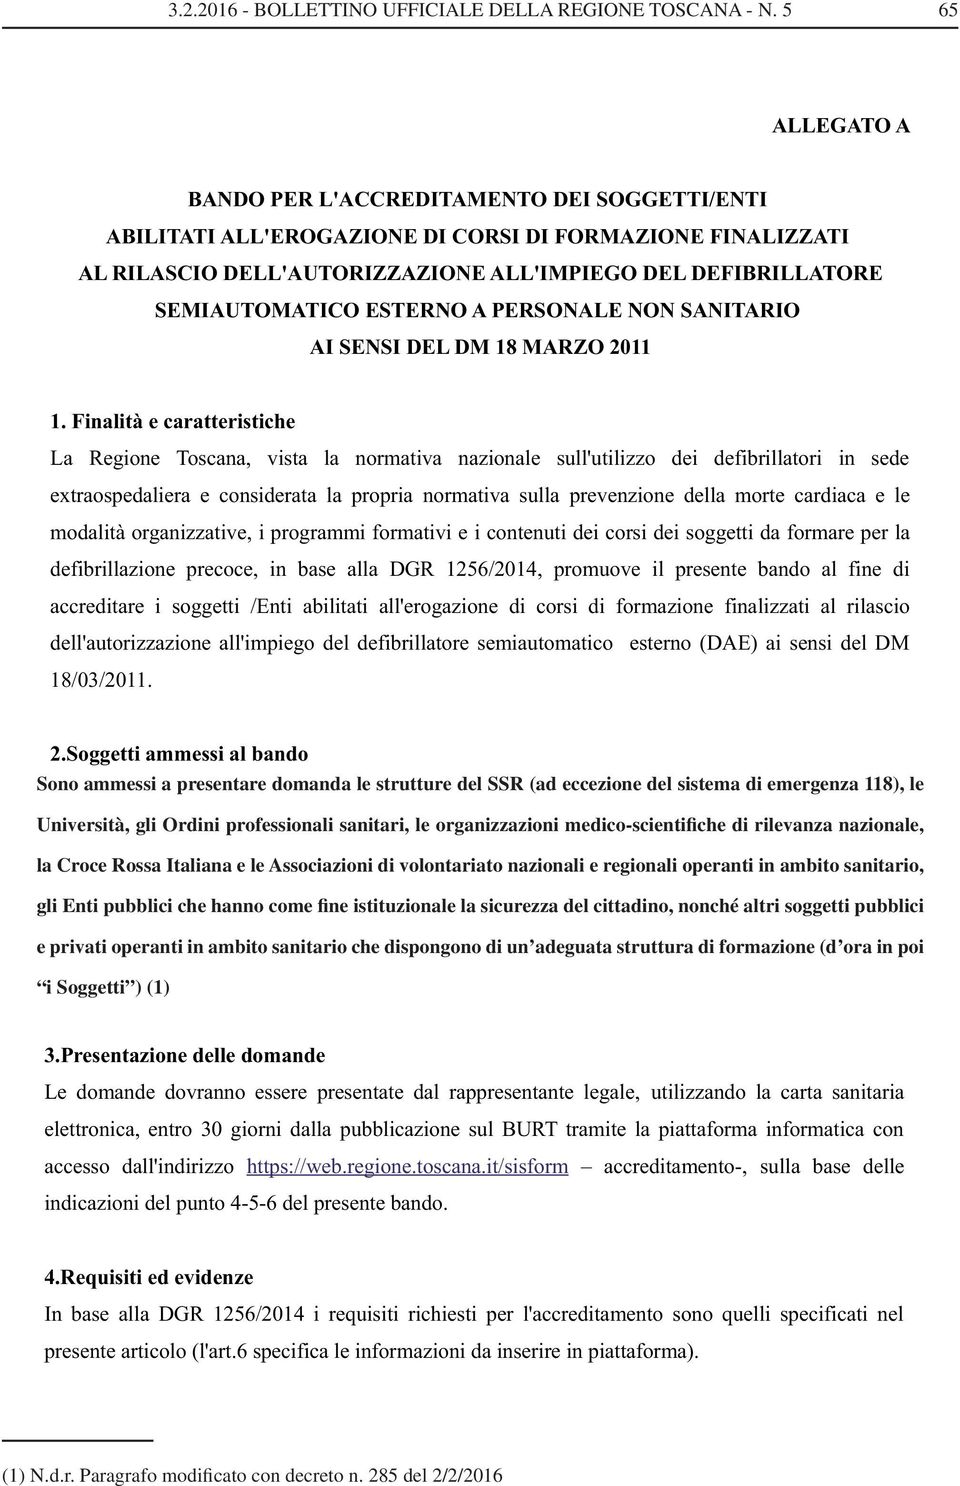 organizzazioni medico-scientifiche di rilevanza nazionale, la Croce Rossa Italiana e le Associazioni di volontariato nazionali e regionali operanti in ambito sanitario,